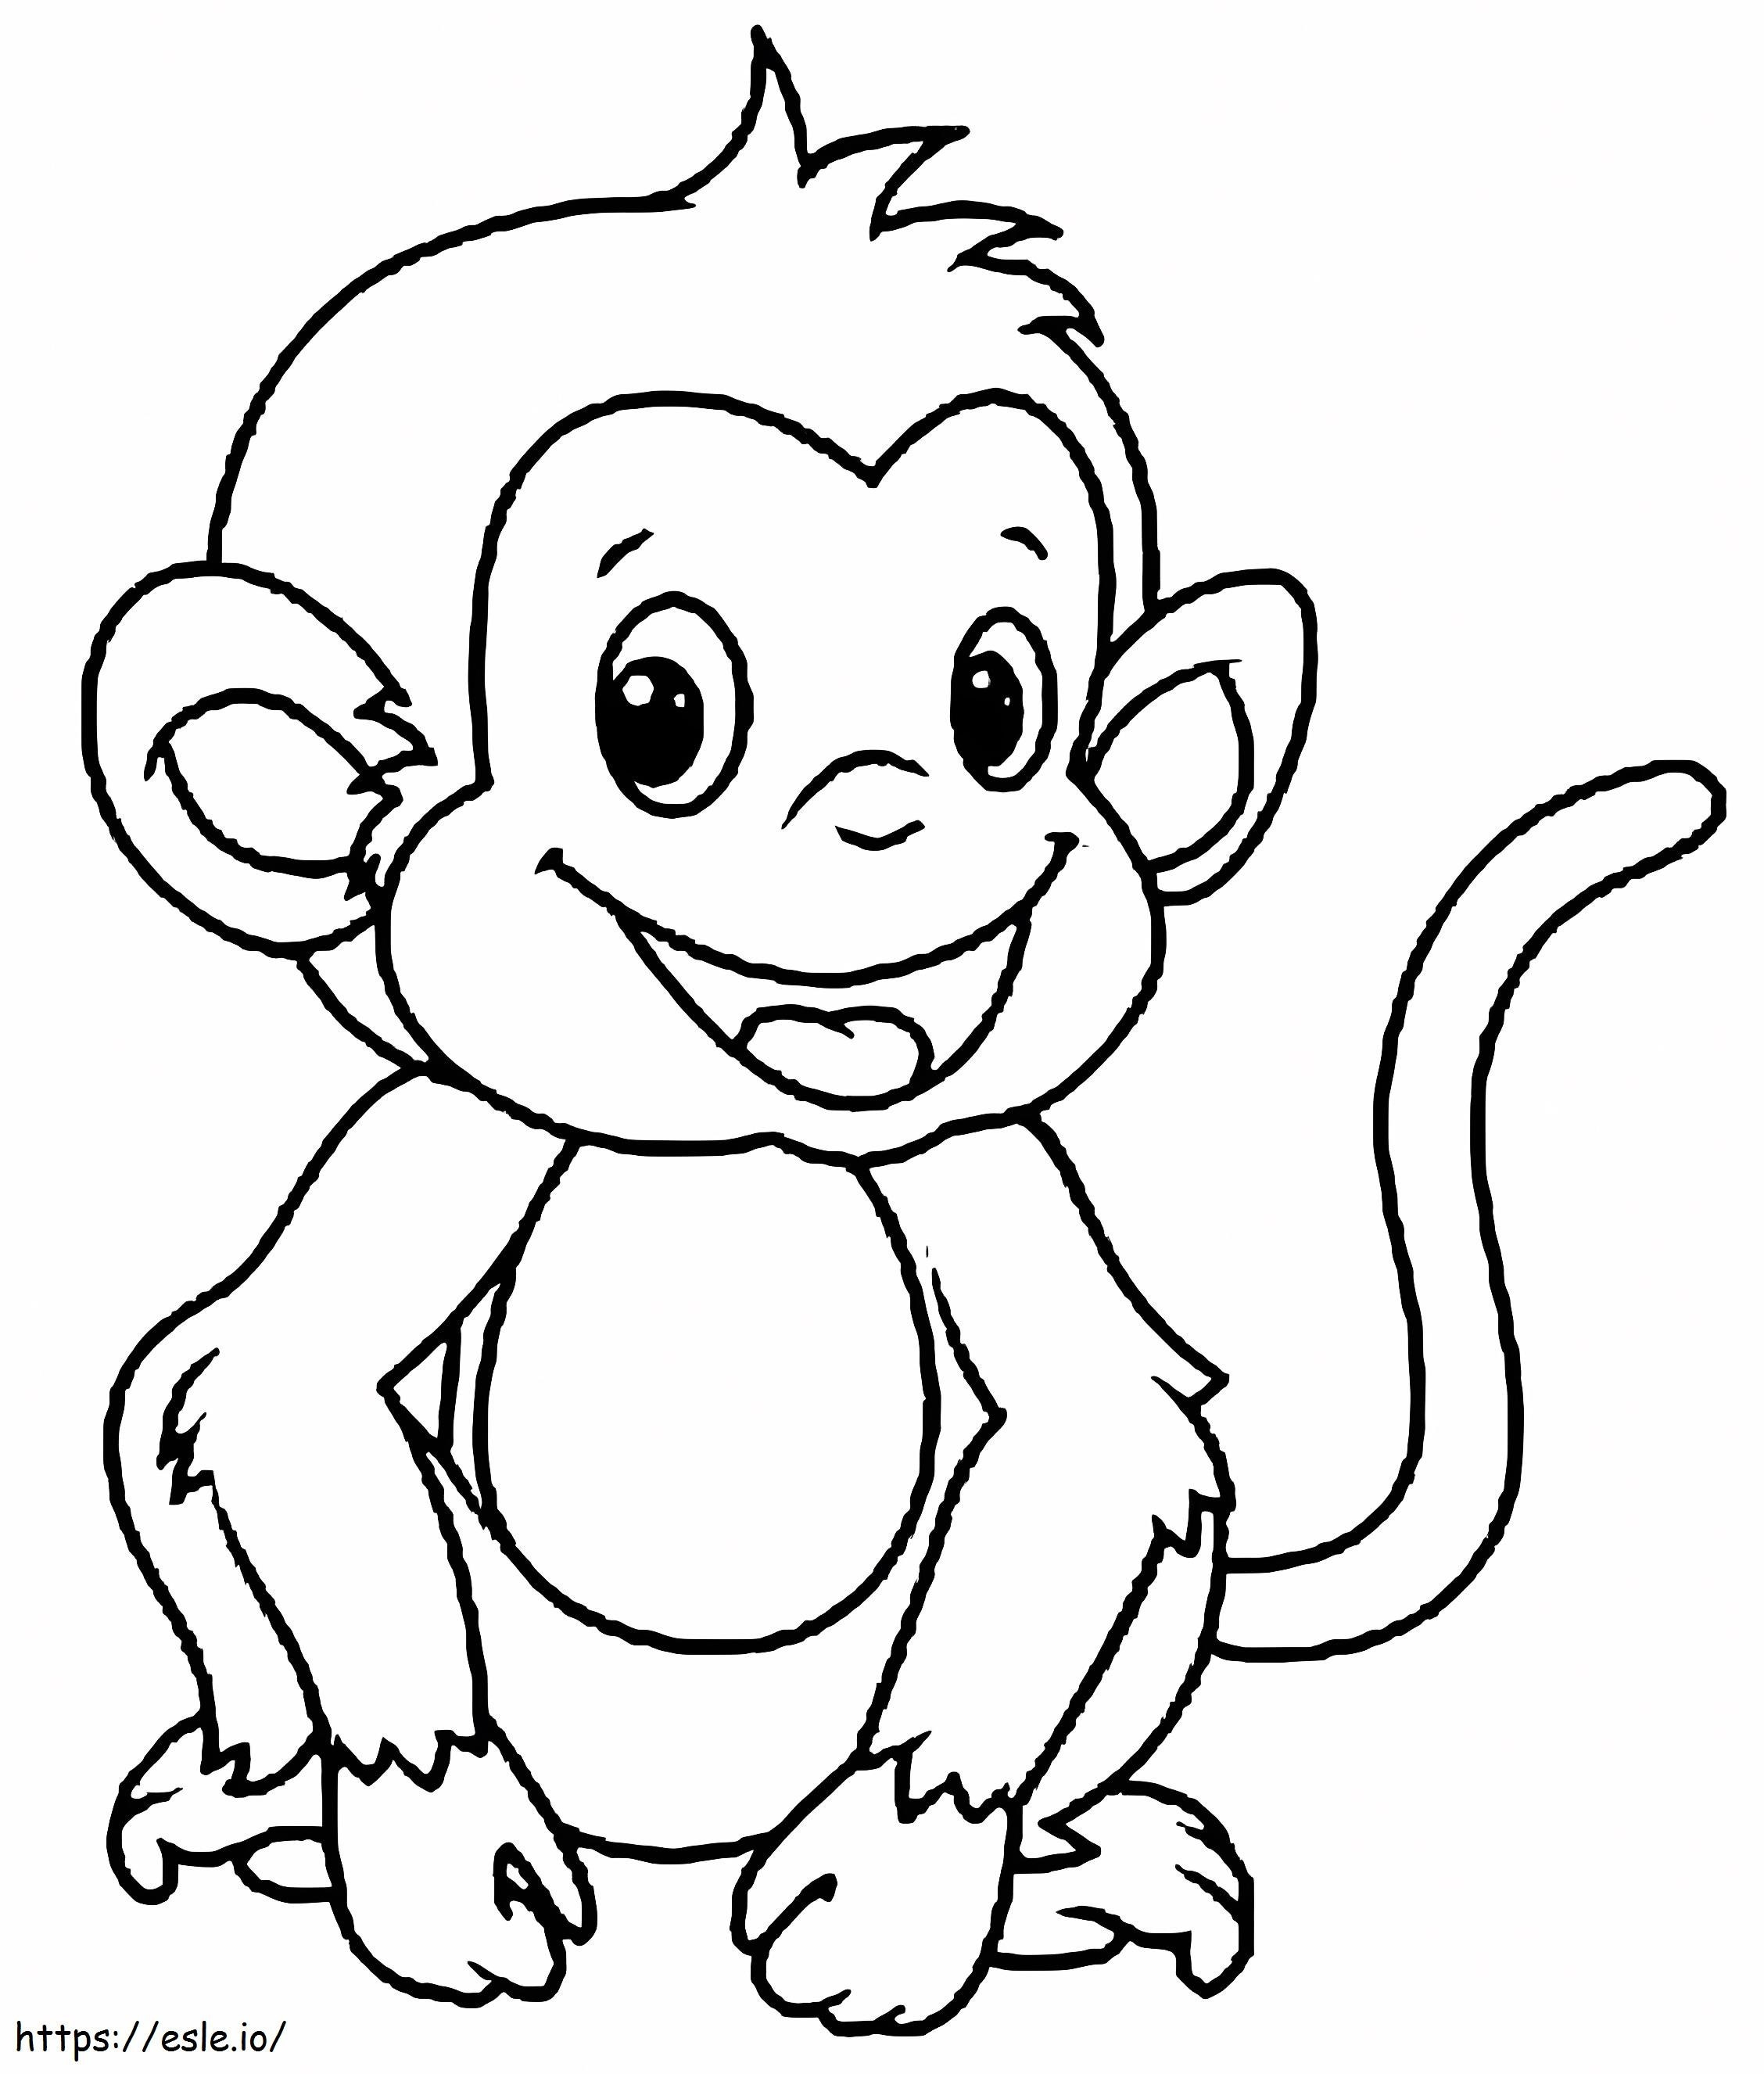 Zabawny rysunek małpy kolorowanka